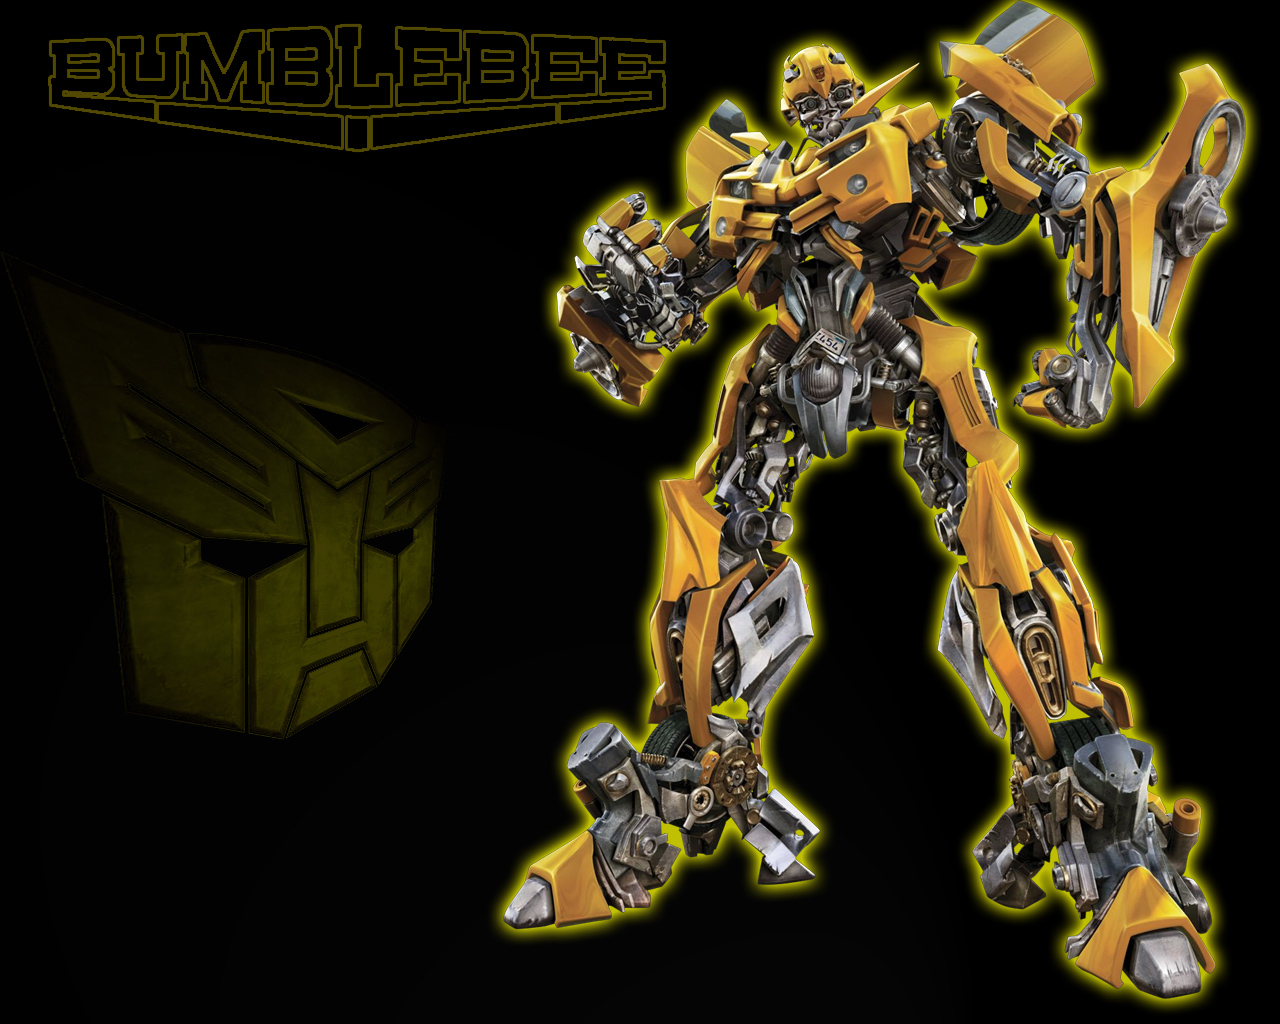 Transformers 2 Bumblebee Wallpaper  WallpaperSafari